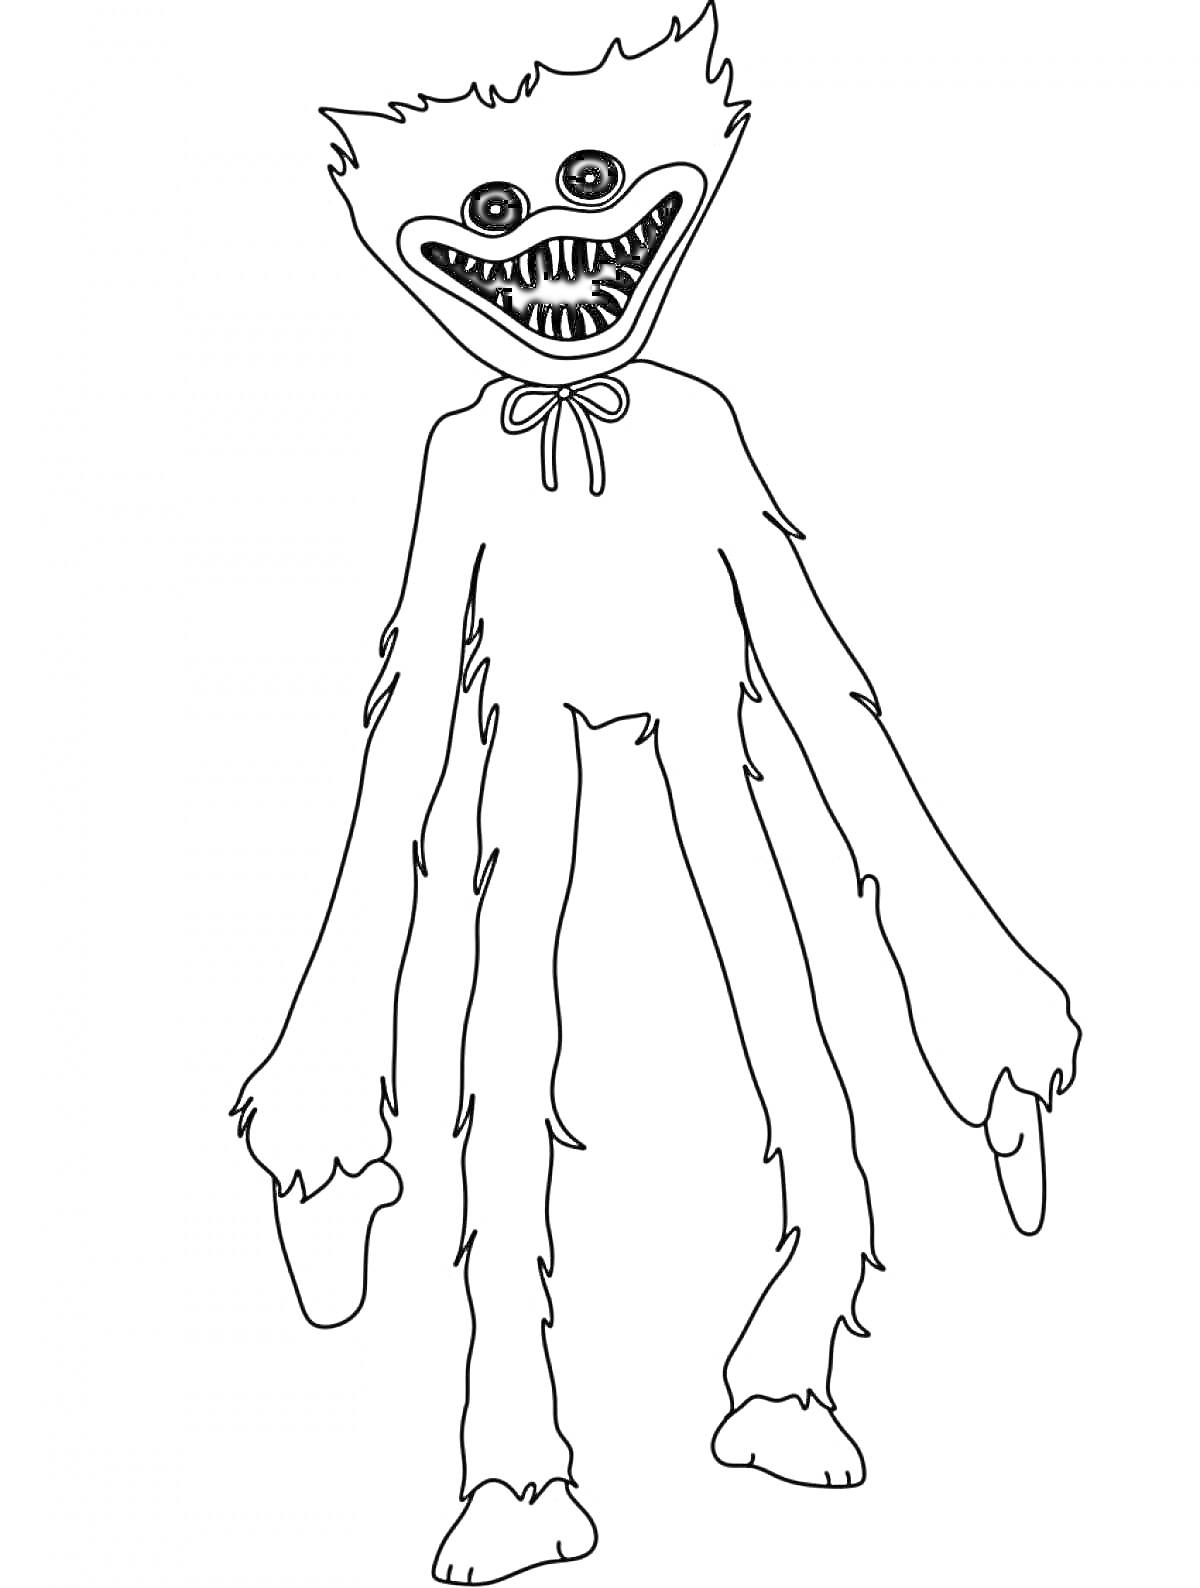 Хаги Ваги с длинными руками и острыми зубами